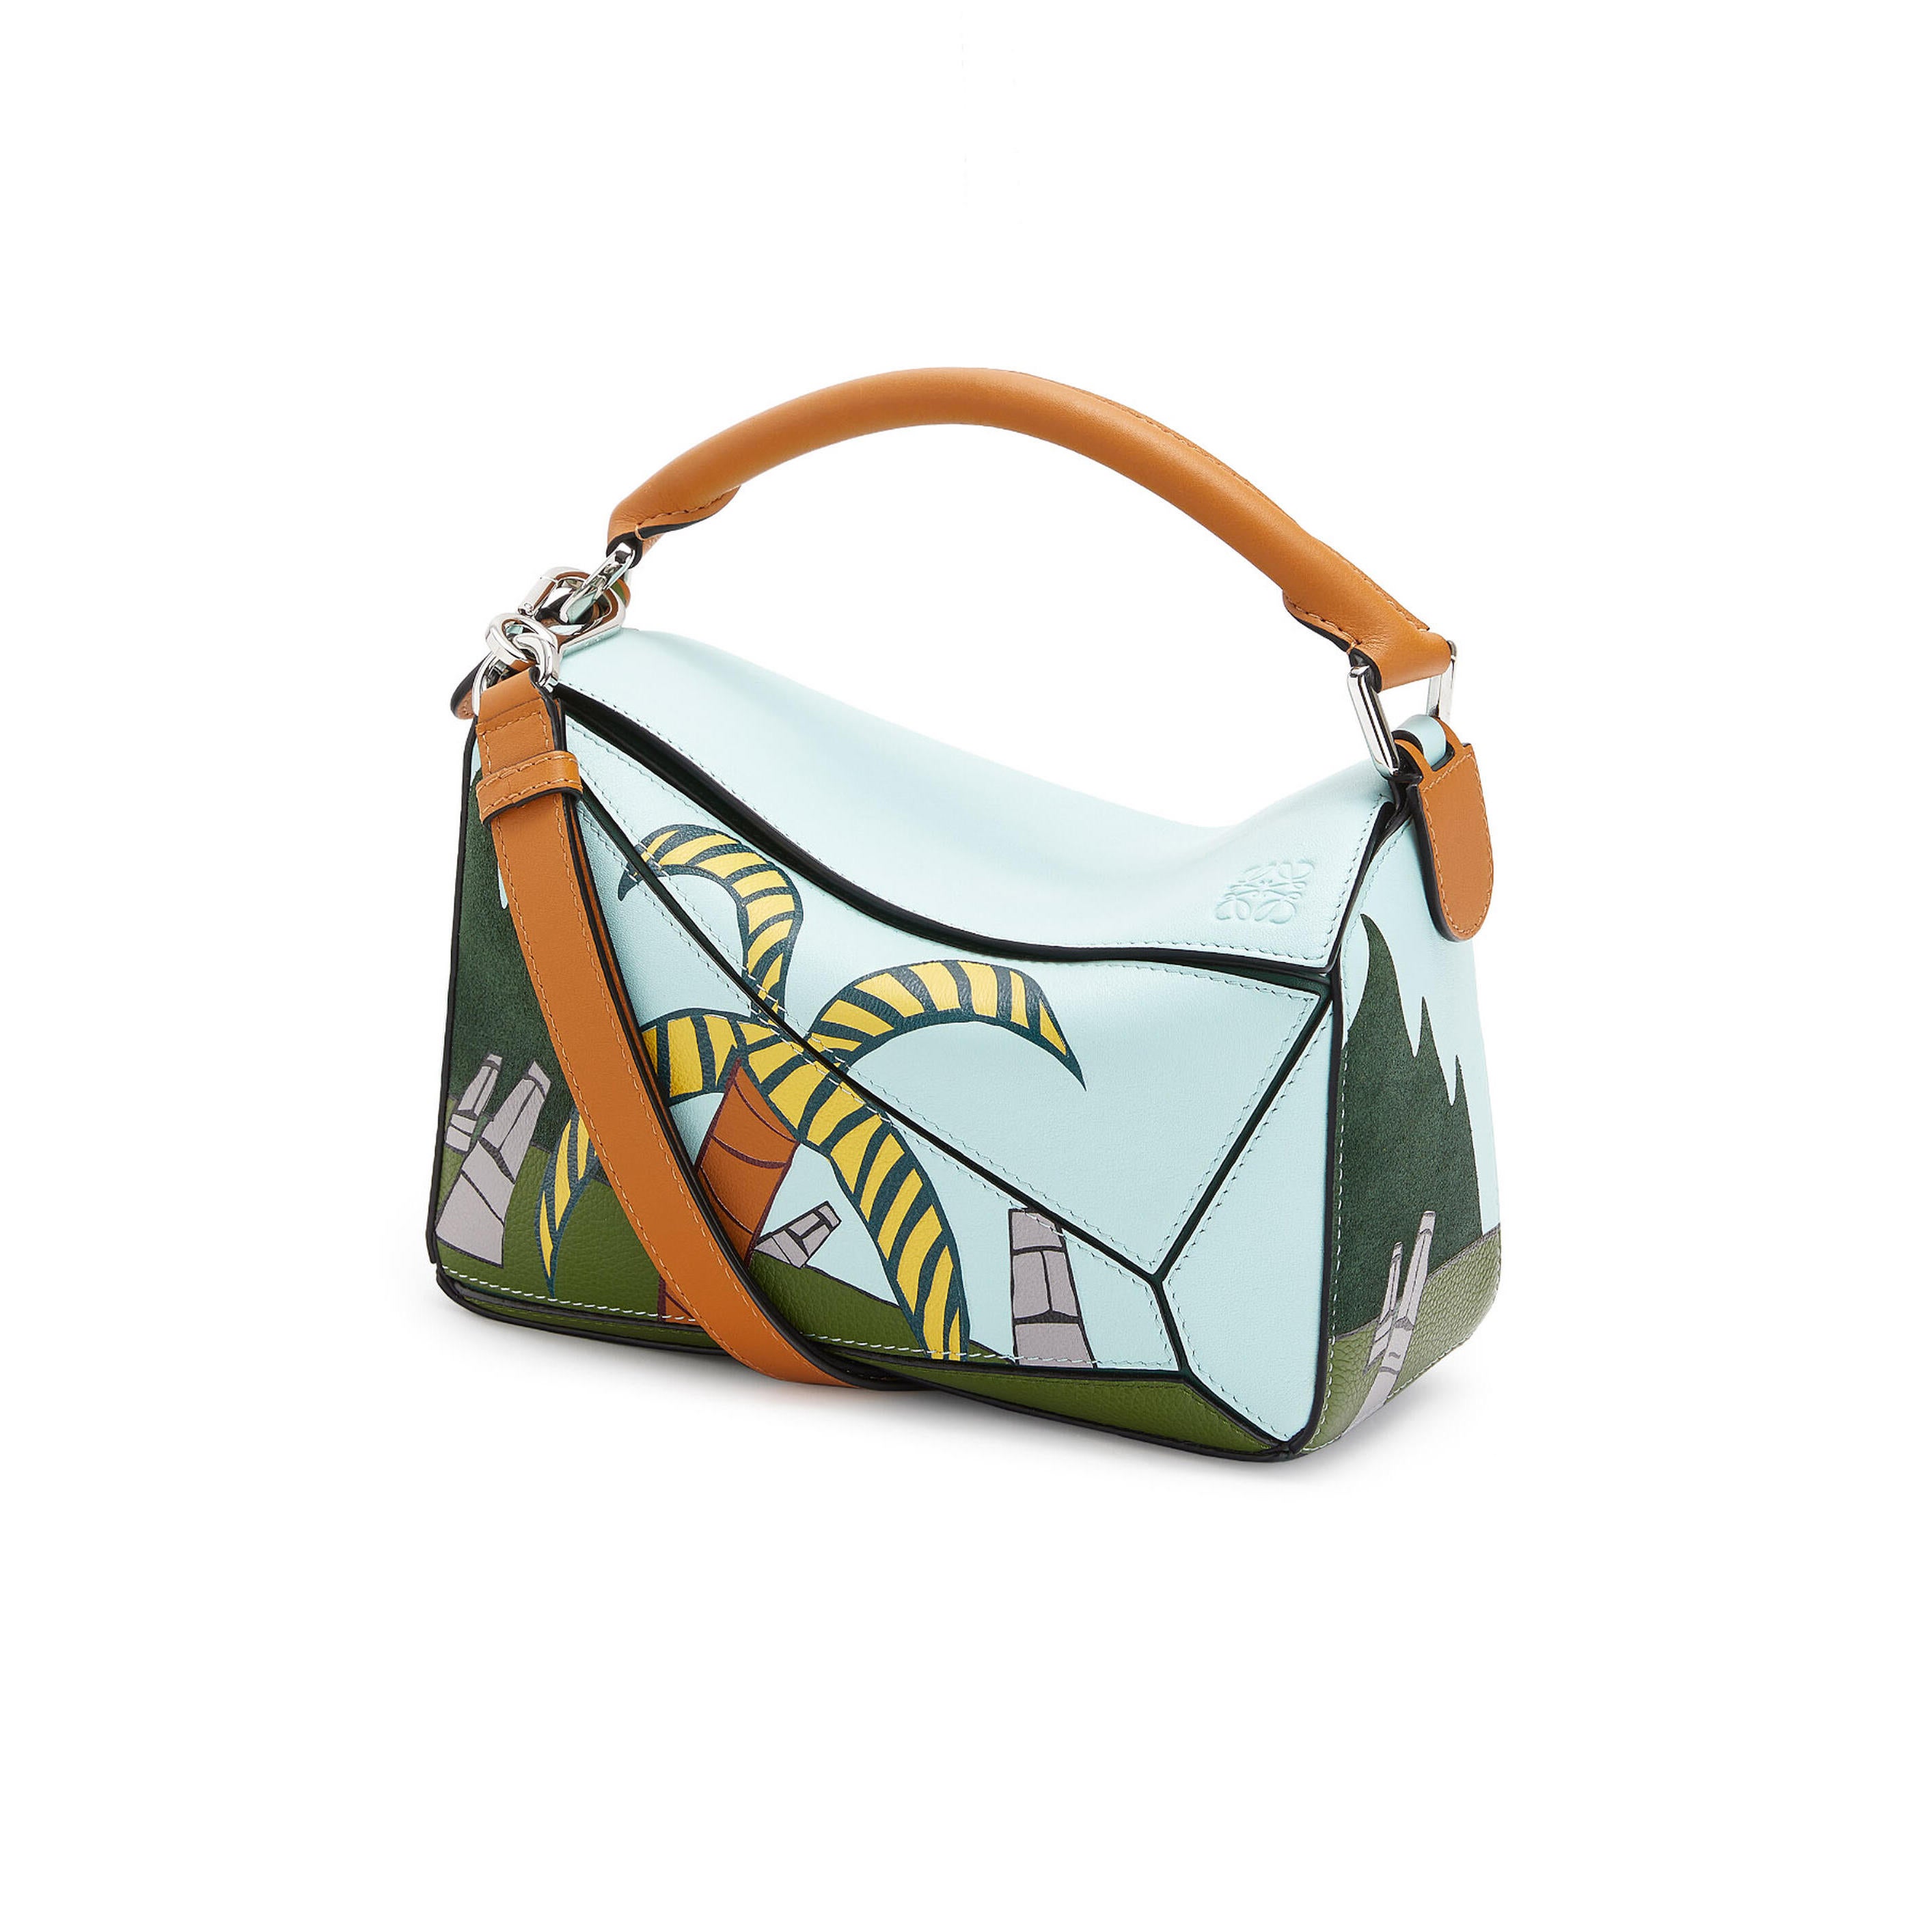 Buy LL LEATHER LAND DESIGNER BAGS New LV Design Sling bag (Tan) at